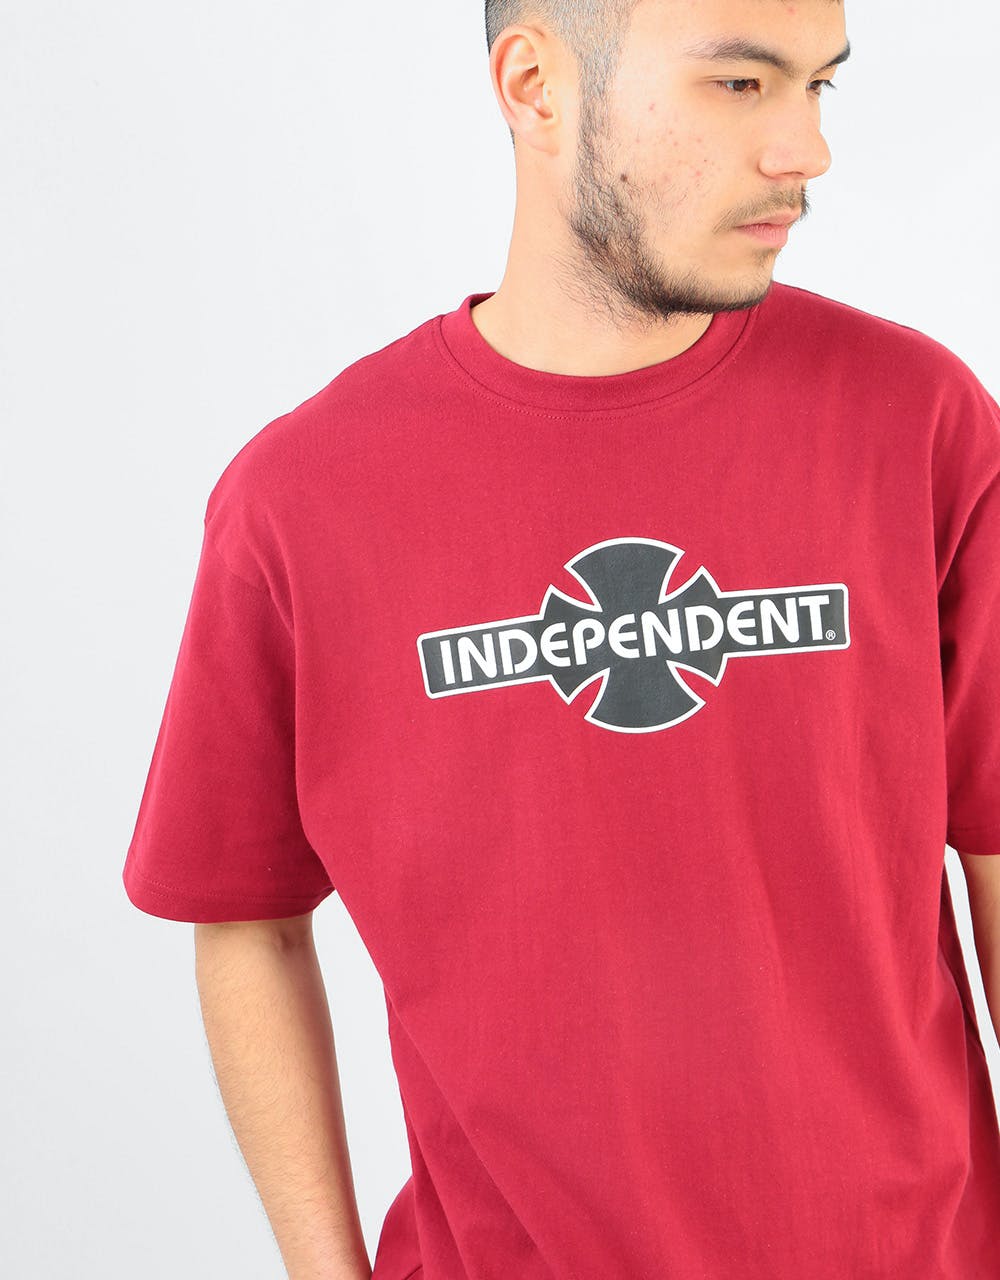 Independent O.G.B.C. T-Shirt - Cardinal Red